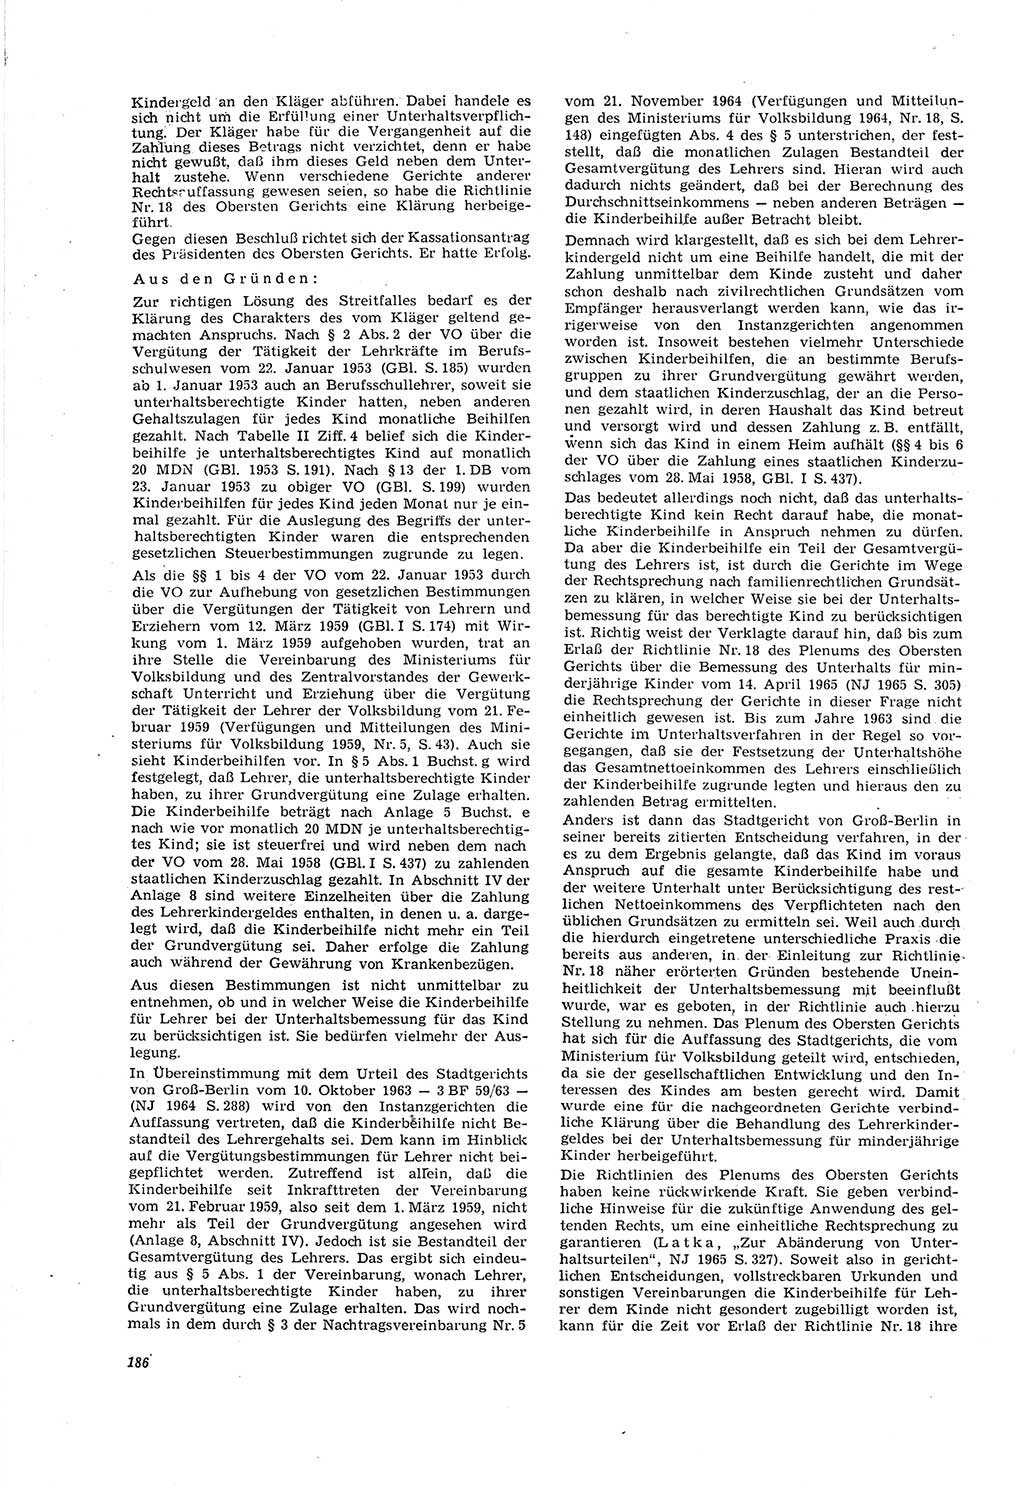 Neue Justiz (NJ), Zeitschrift für Recht und Rechtswissenschaft [Deutsche Demokratische Republik (DDR)], 20. Jahrgang 1966, Seite 186 (NJ DDR 1966, S. 186)